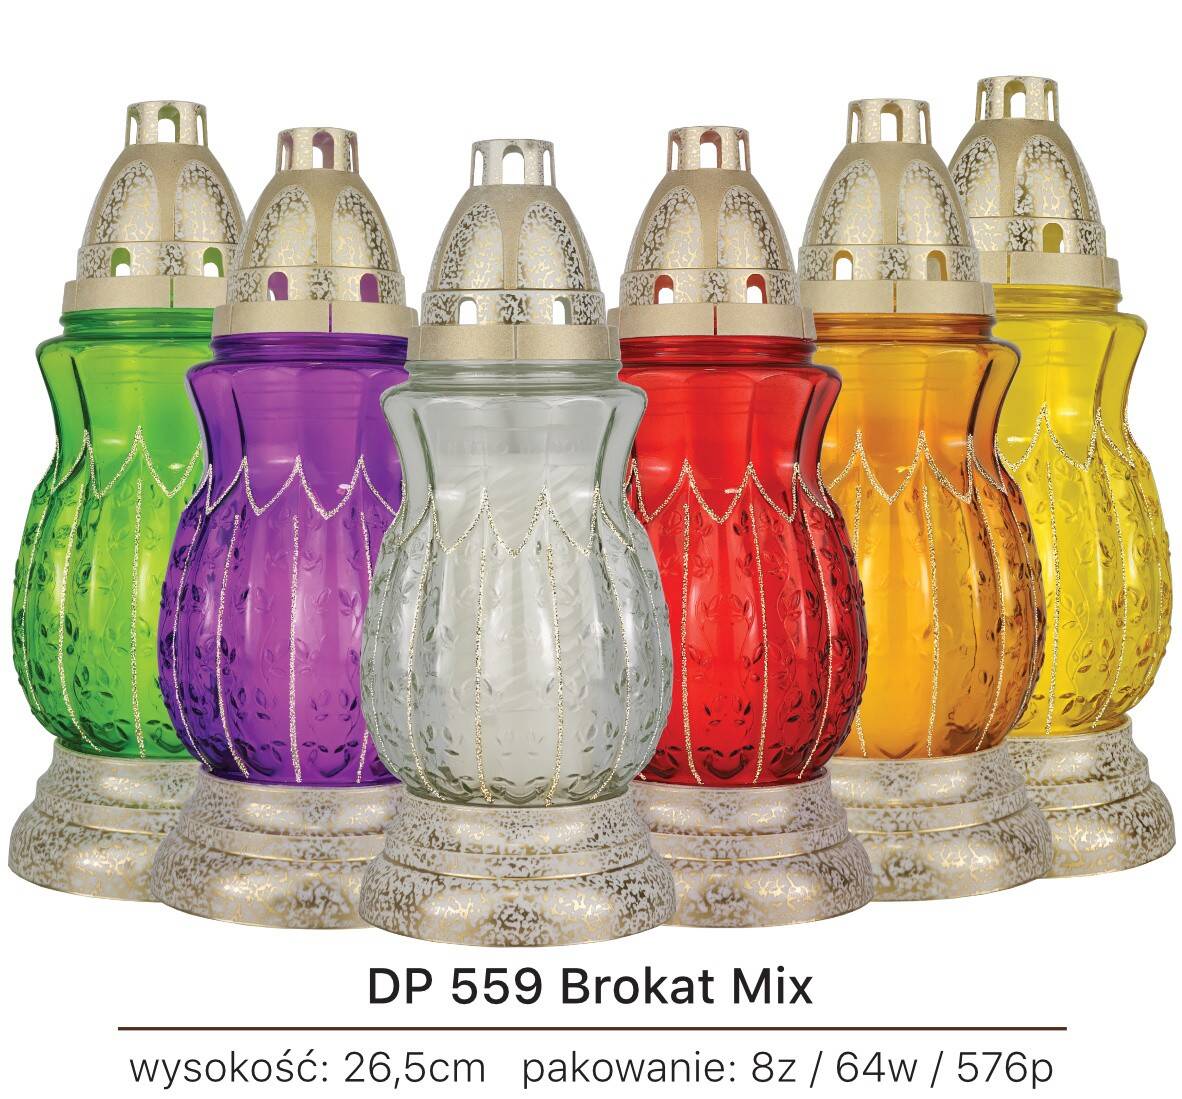 DP 559 Brokat Mix